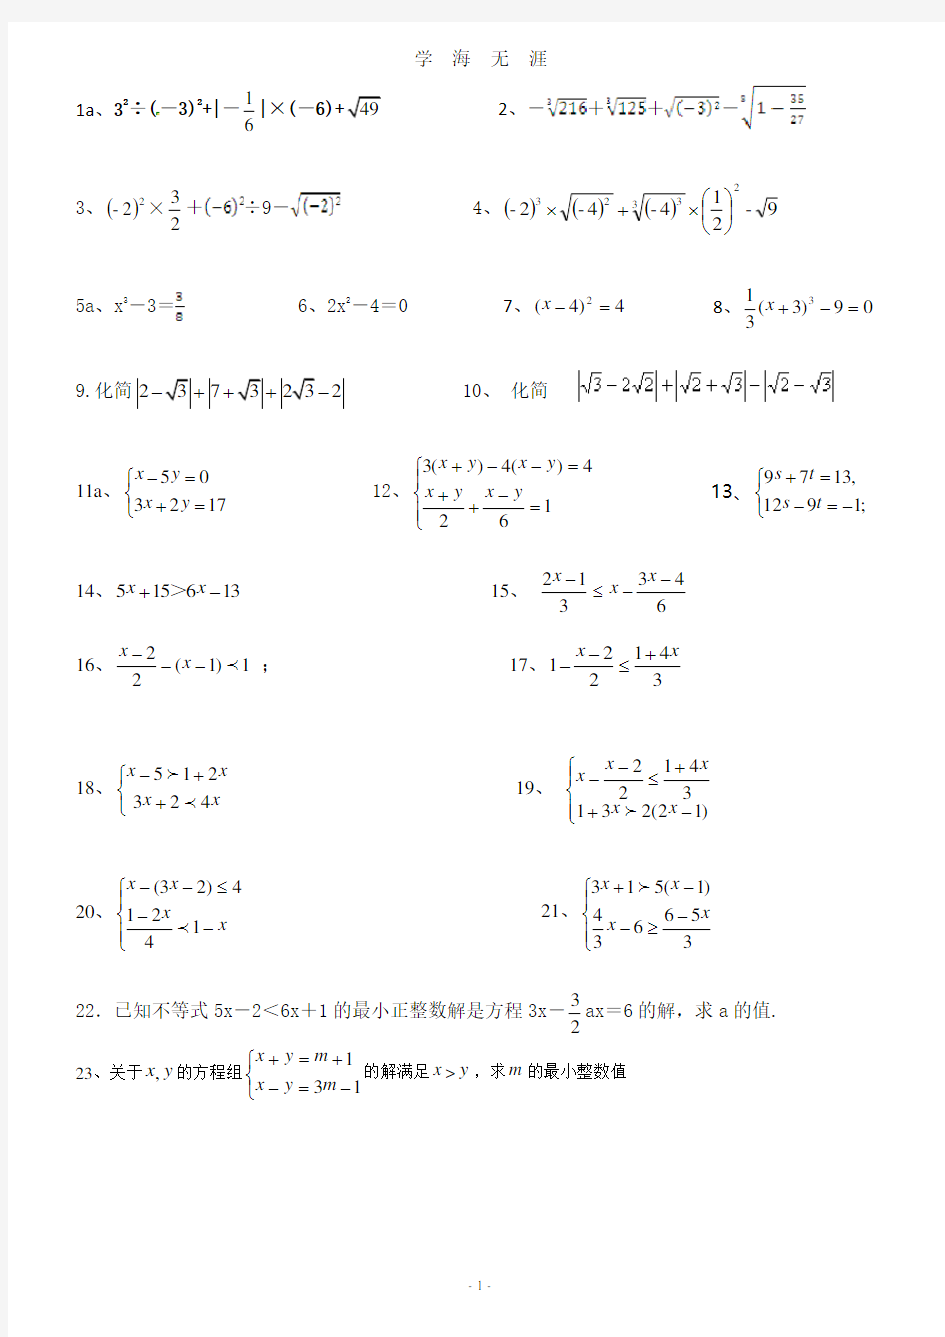 人教版七年级数学下册计算题练习(7月20日).pdf